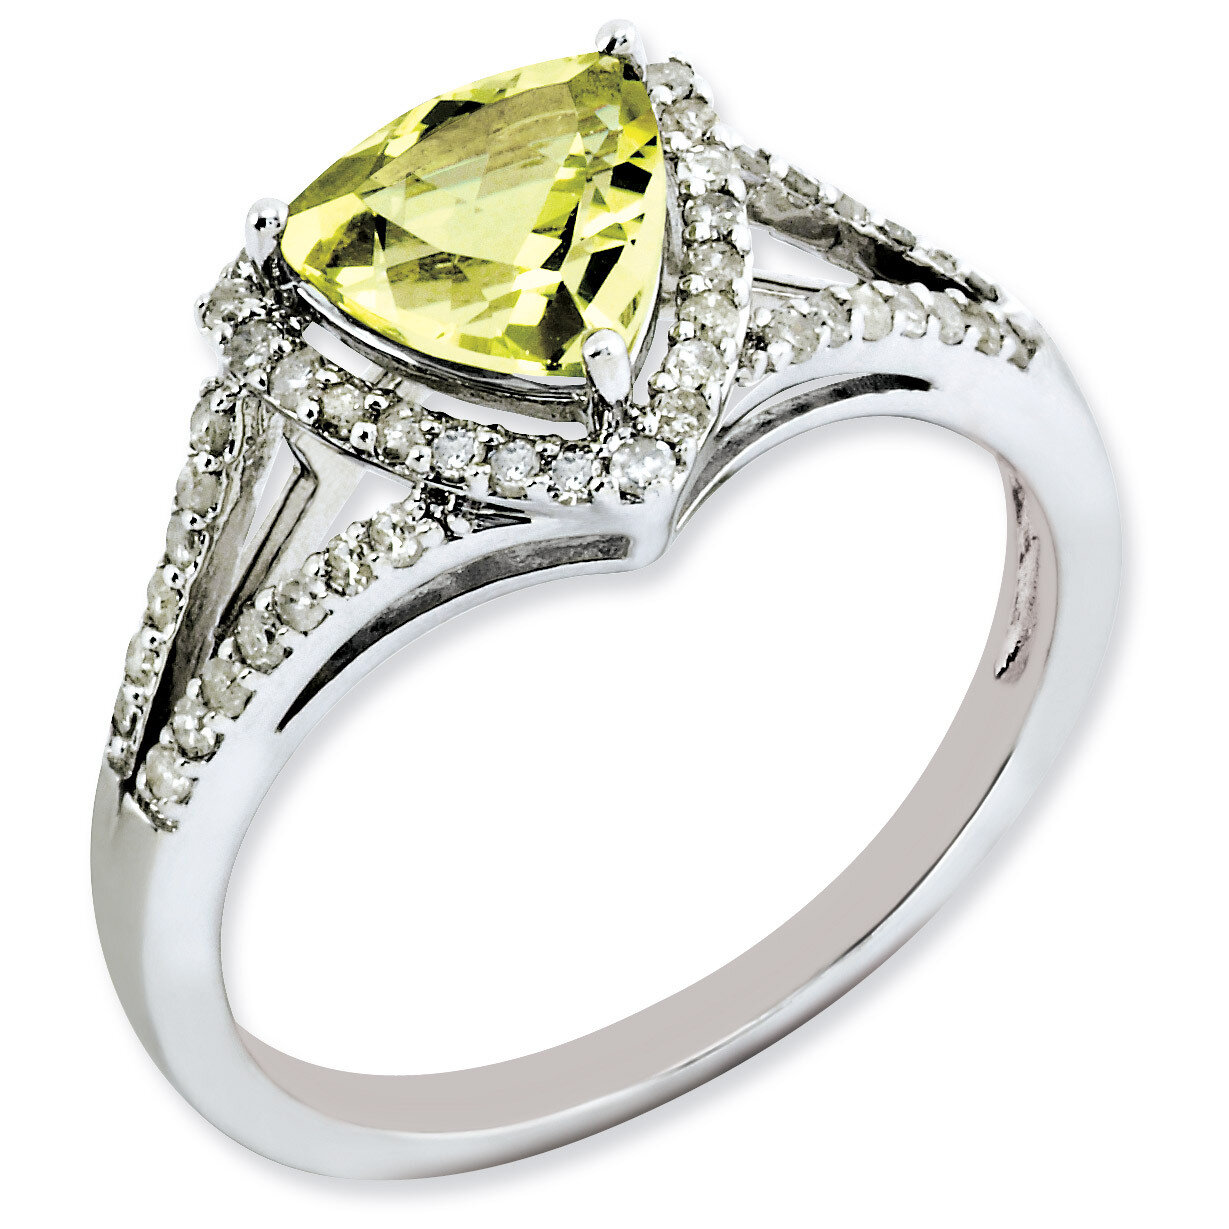 Lemon Quartz Ring Sterling Silver Diamond QR3068LQ